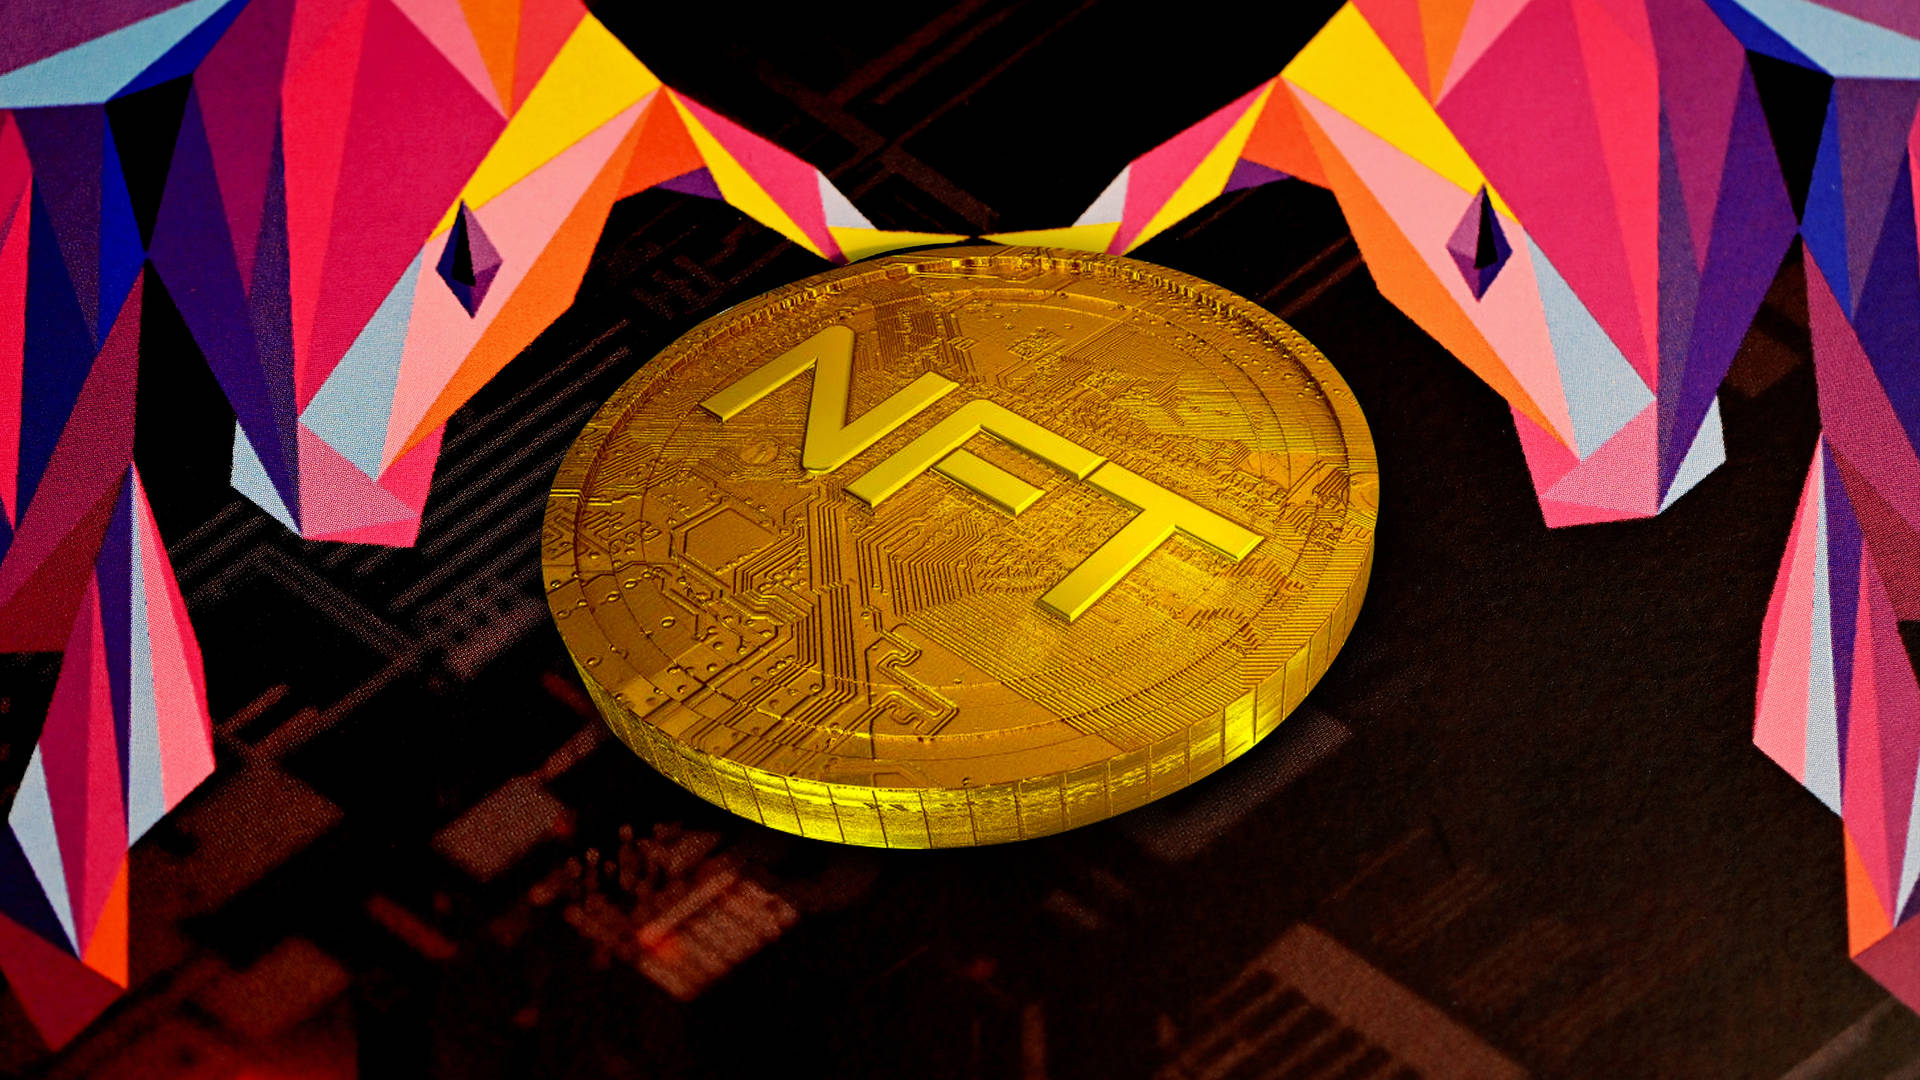 Nft Gold Coin Digital Art